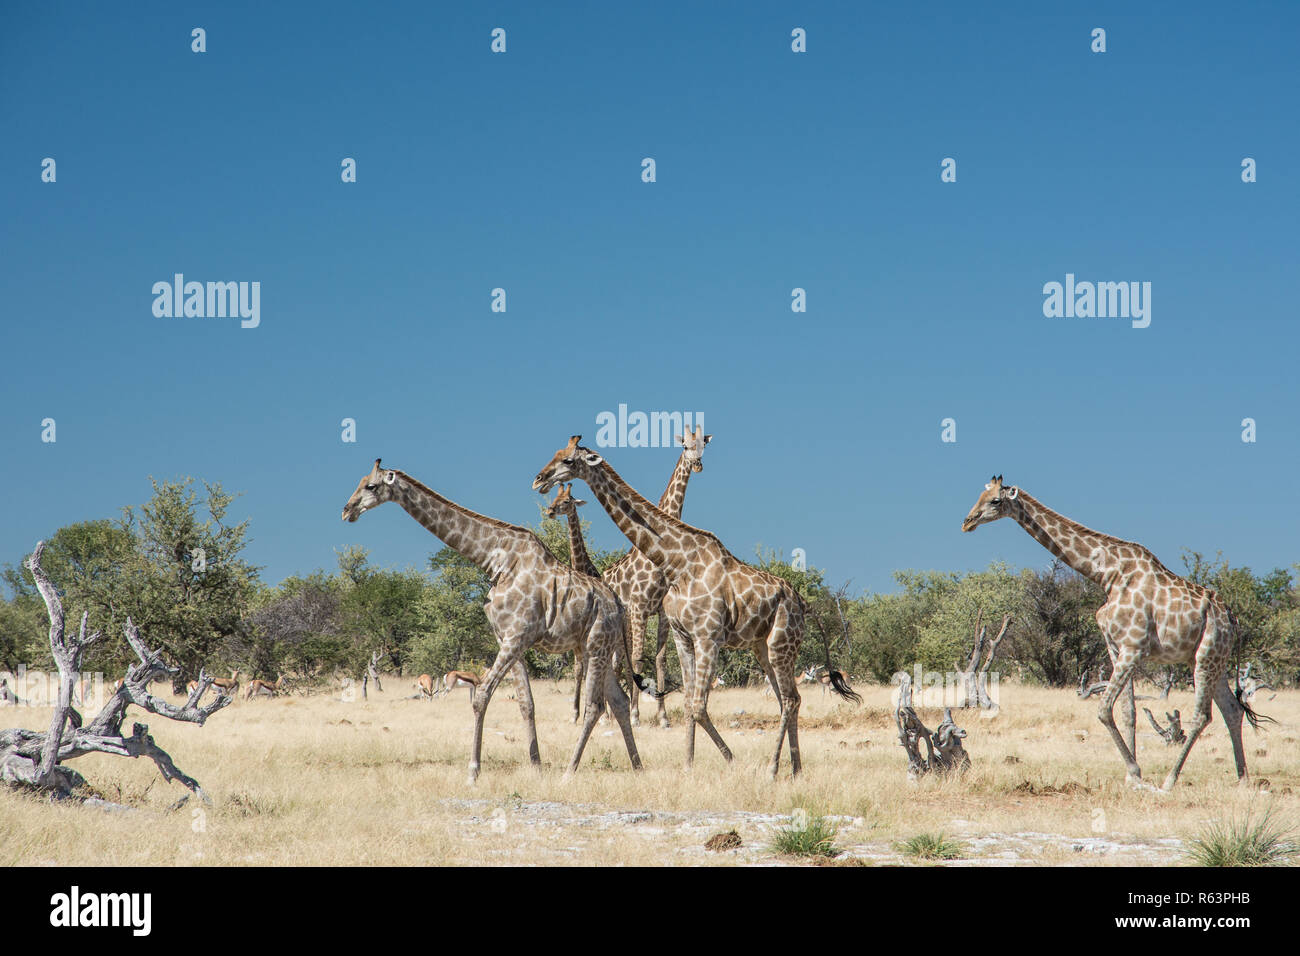 Four giraffes Stock Photo